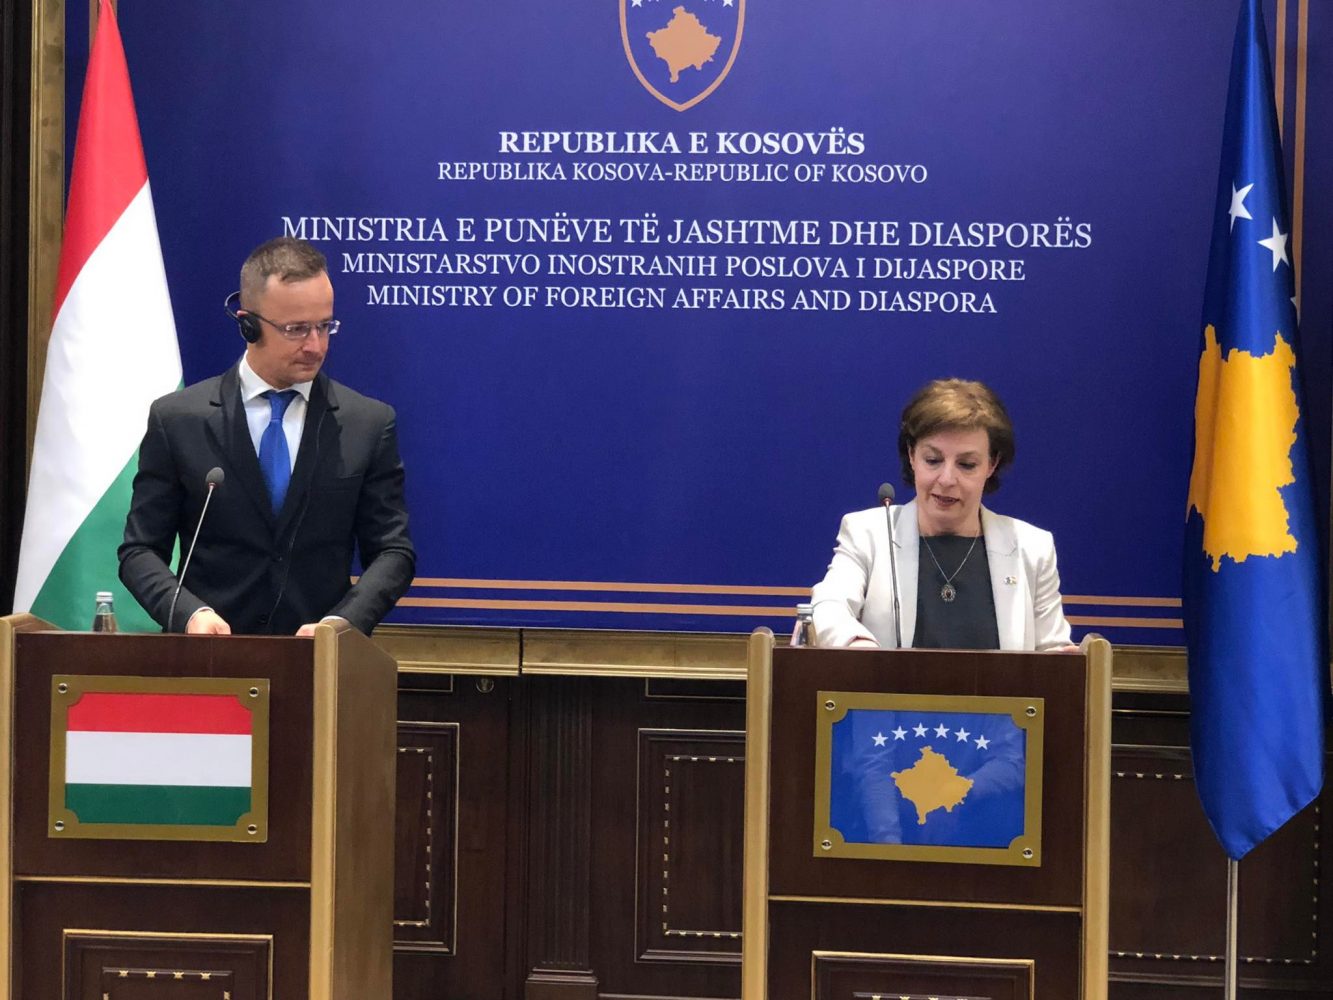 Gërvalla i kërkon Hungarisë angazhim për të ndryshuar qasjen agresive të Serbisë ndaj Kosovës